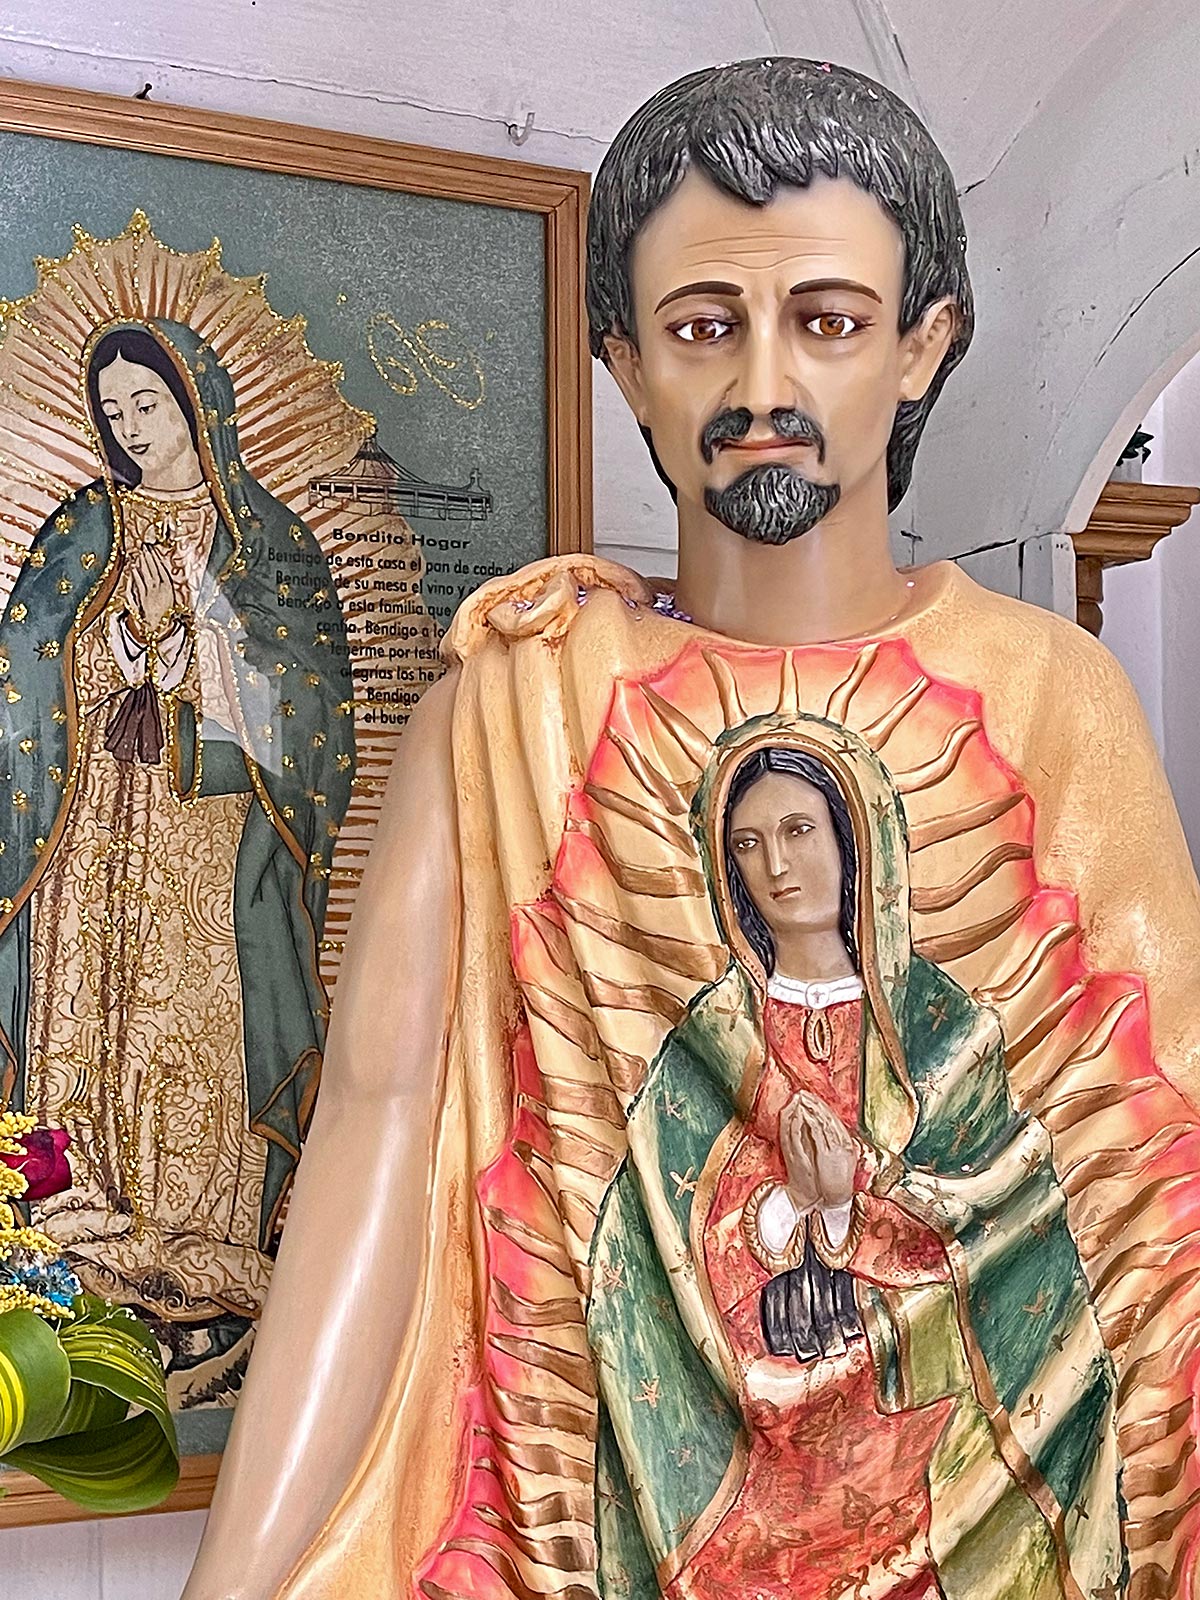 Juan Diegon patsas, jonka kangasviittaan on painettu ihmeellinen Marian kuva, Guadalupen kirkko, San Cristobal